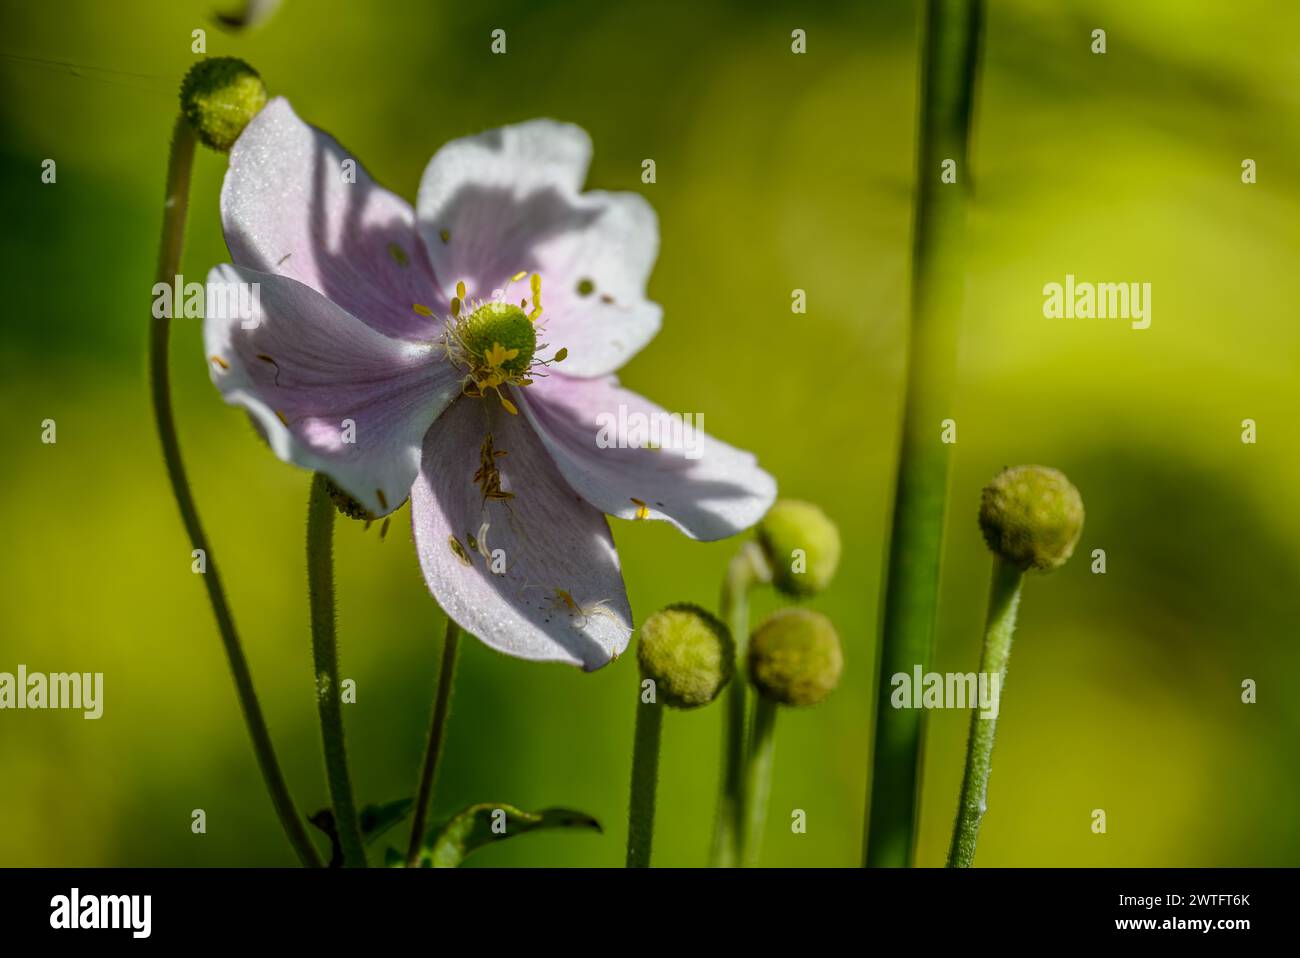 Japanese Anemone September Charm flower Stock Photo